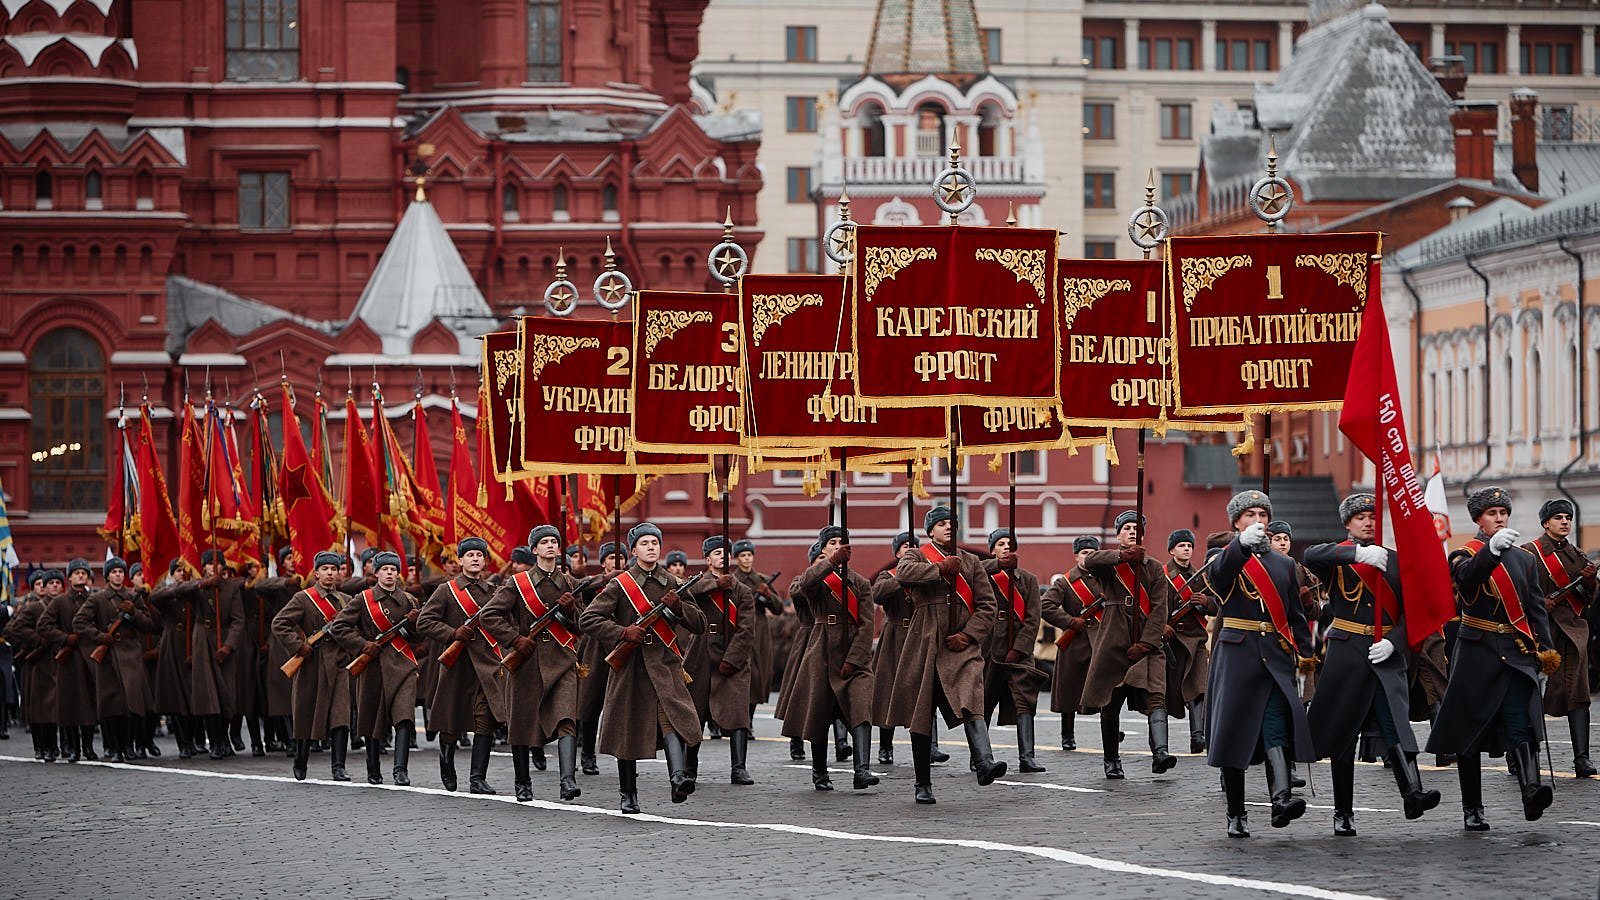 Военный парад 24. 24 Июня парад Победы в Москве 1945. Парад Победы на красной площади 1945. Парад 24 июня 1945 года в Москве на красной площади. Знамя Победы на параде Победы 1945 года.